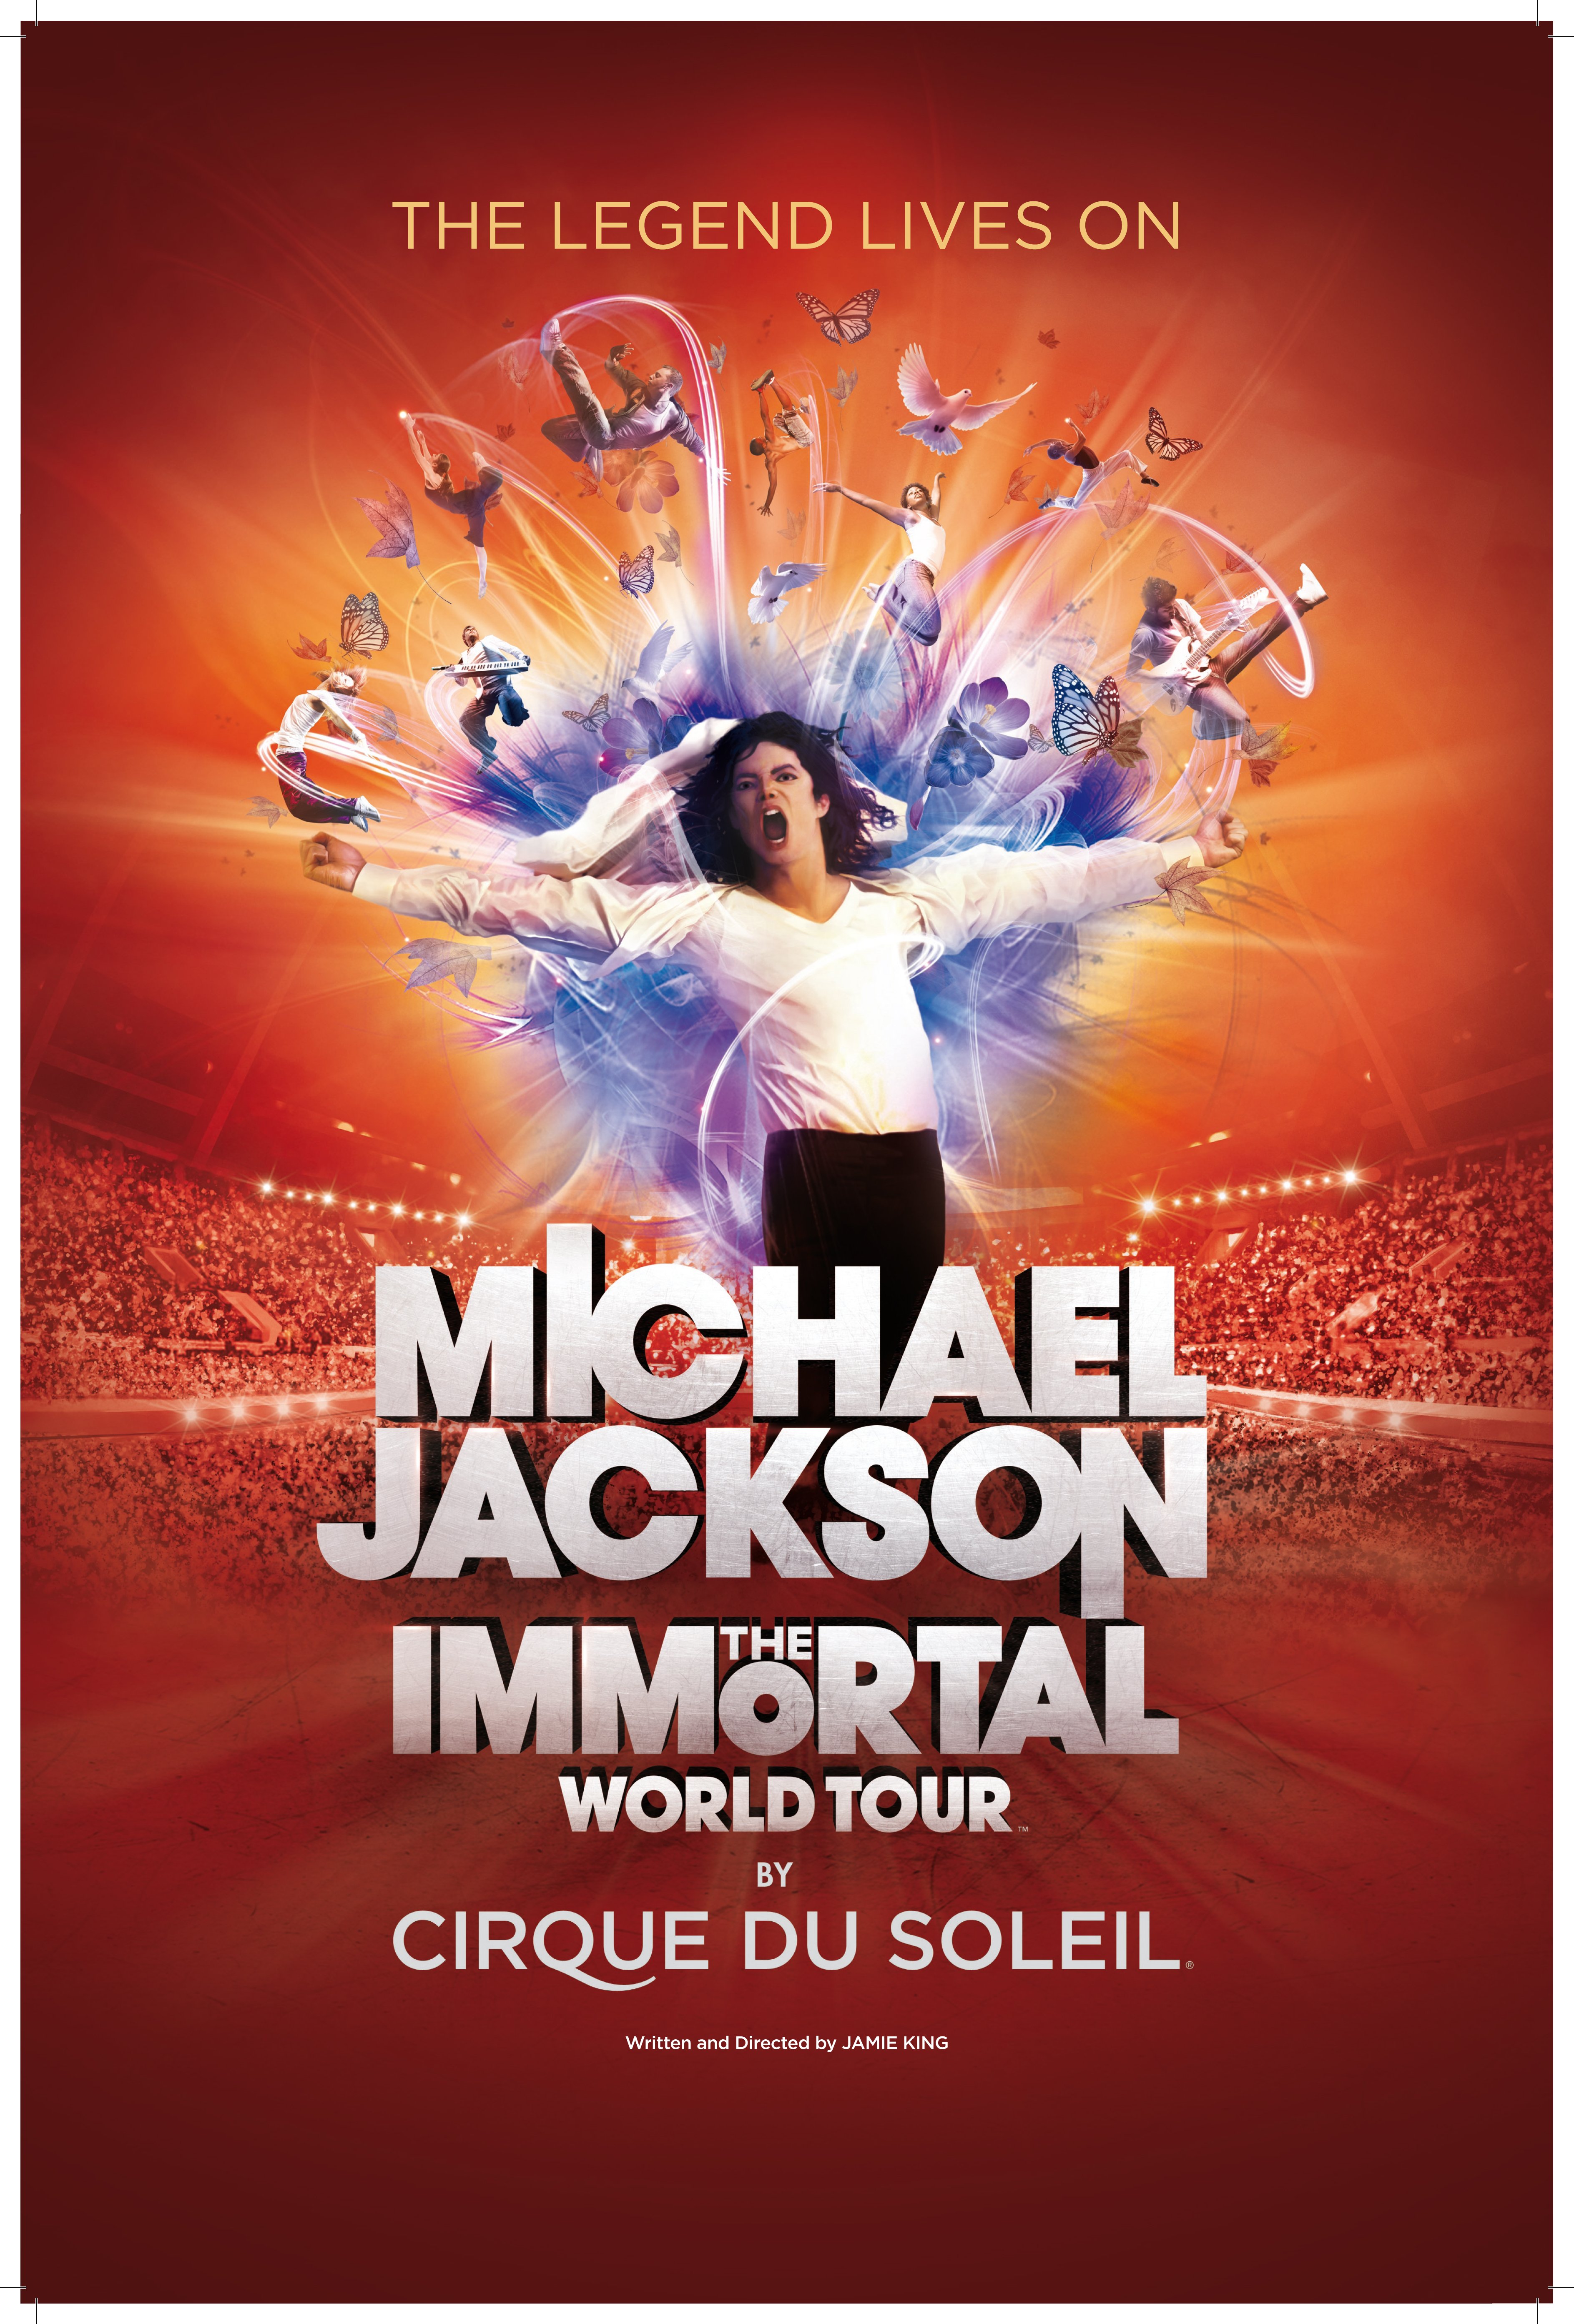 L'affiche du film Michael Jackson: The Immortal World Tour